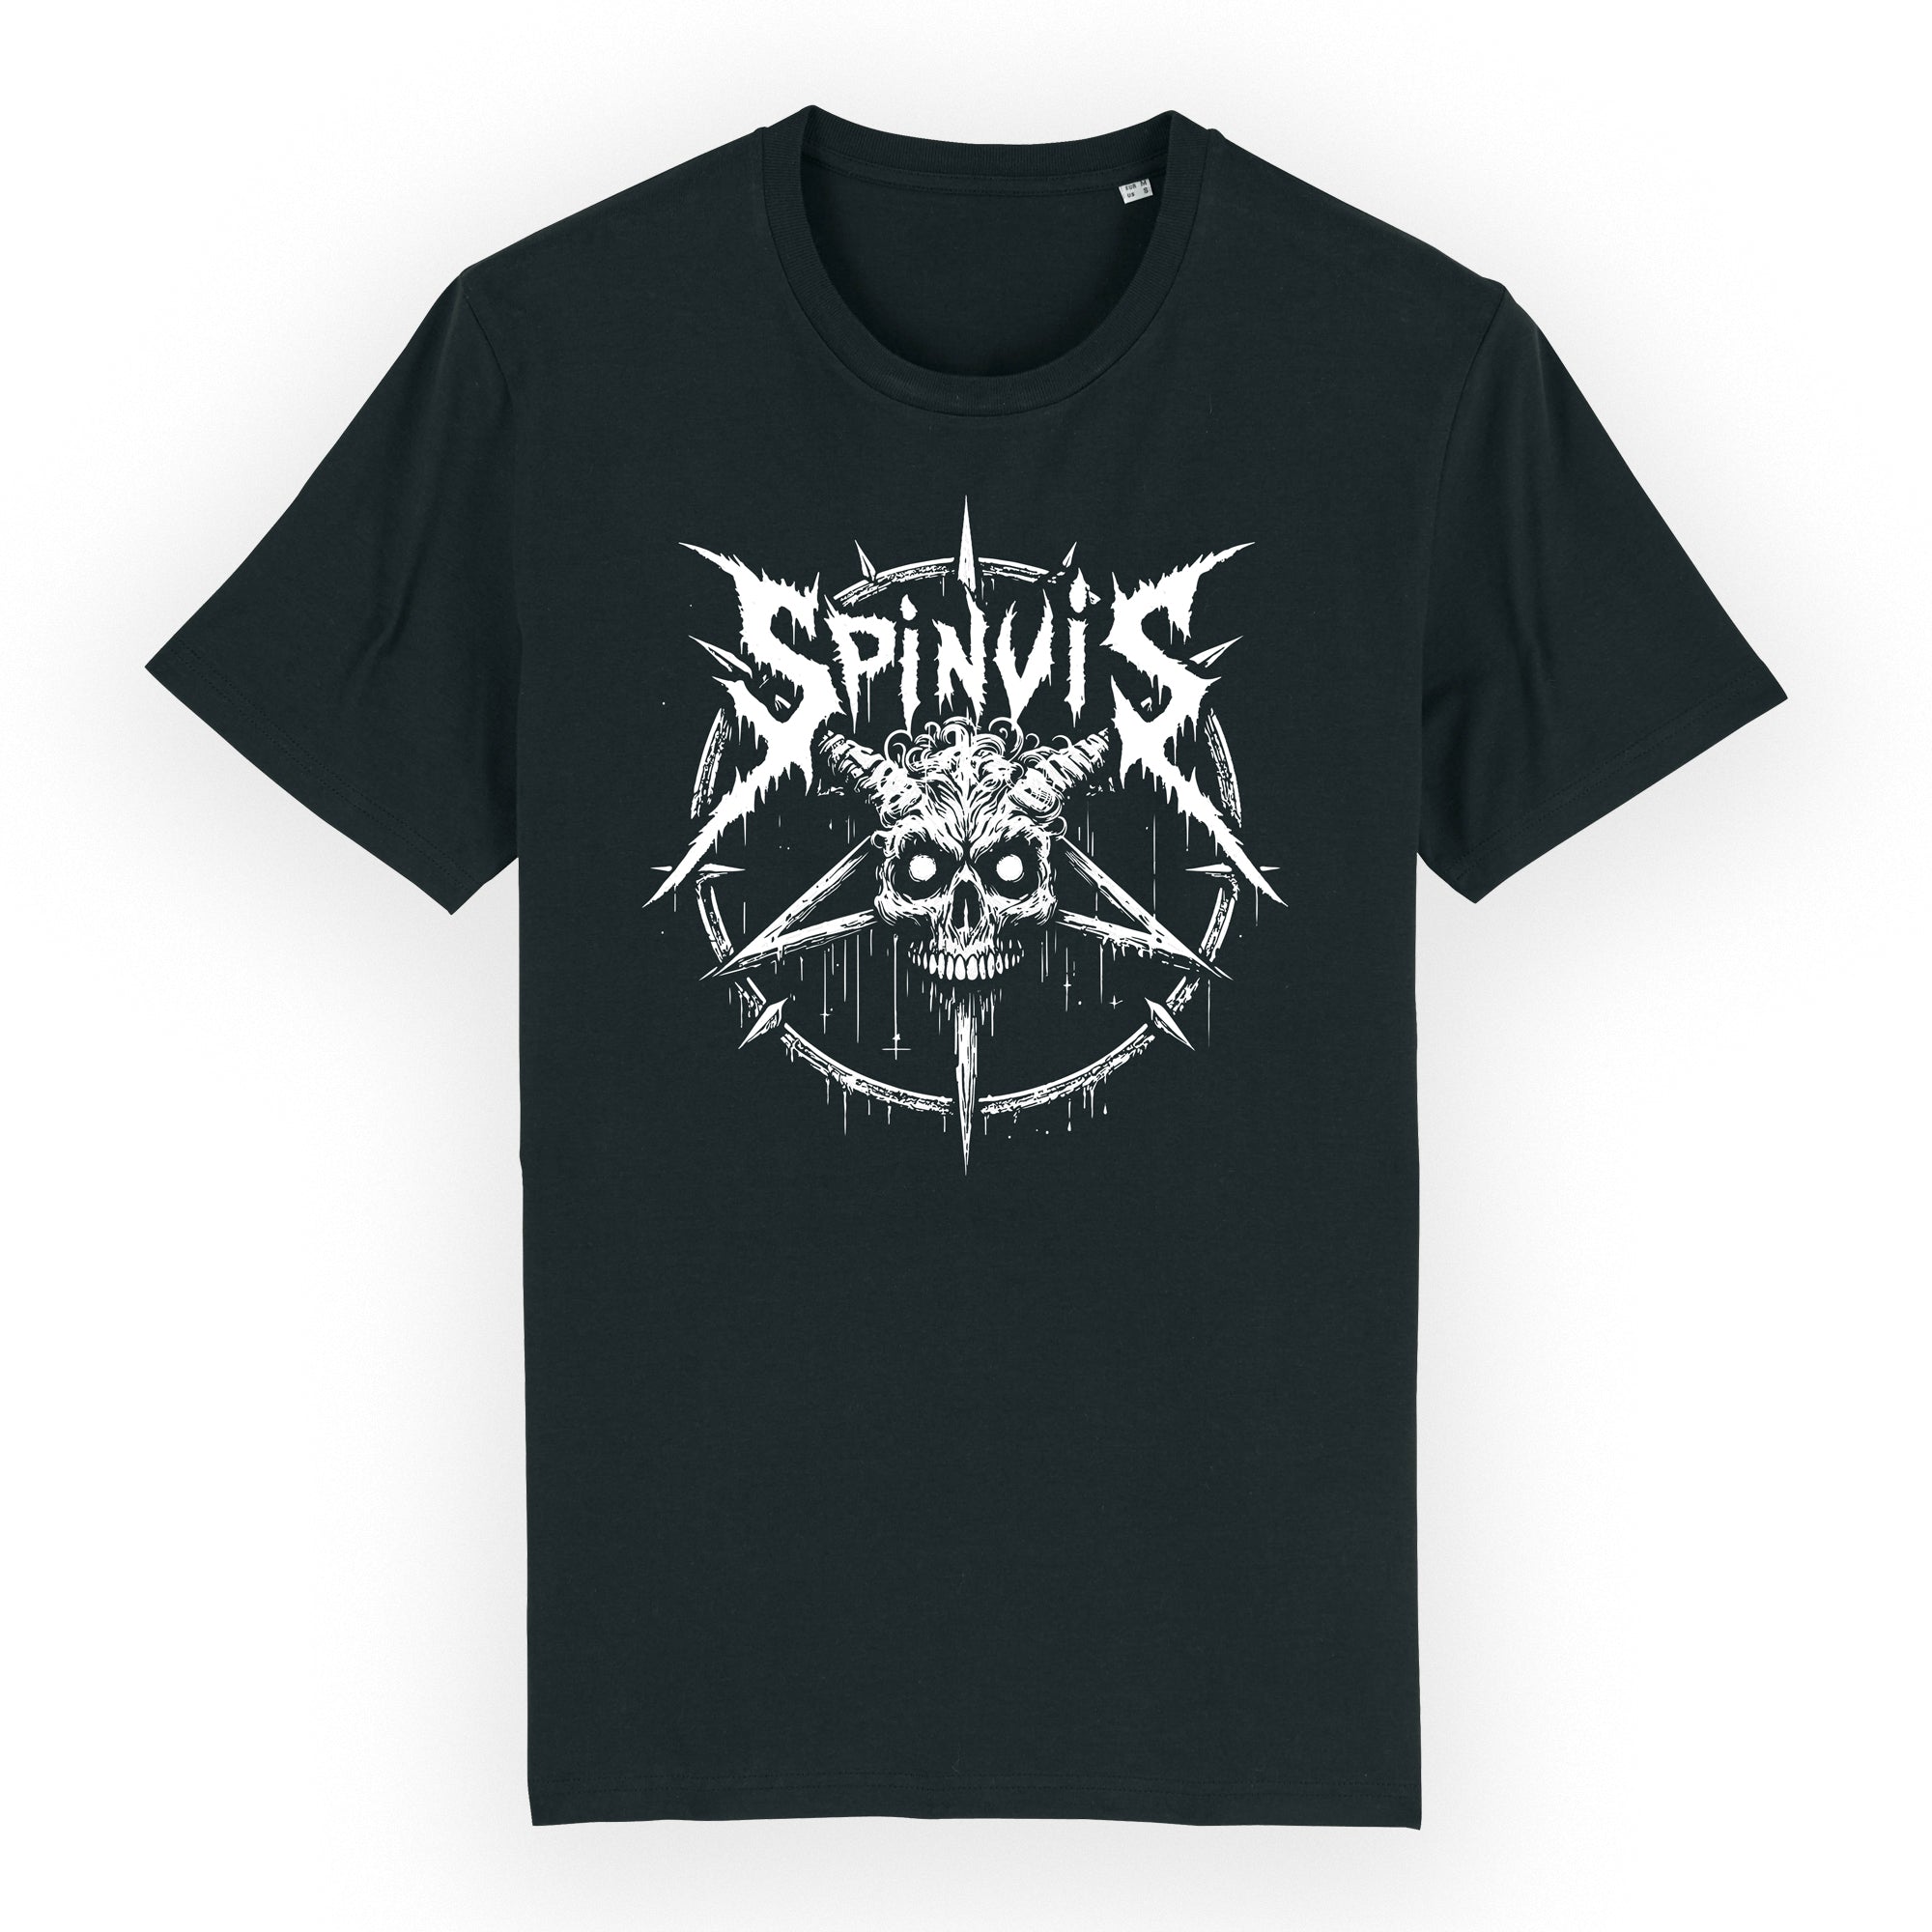 Spinvis - Skull t-shirt